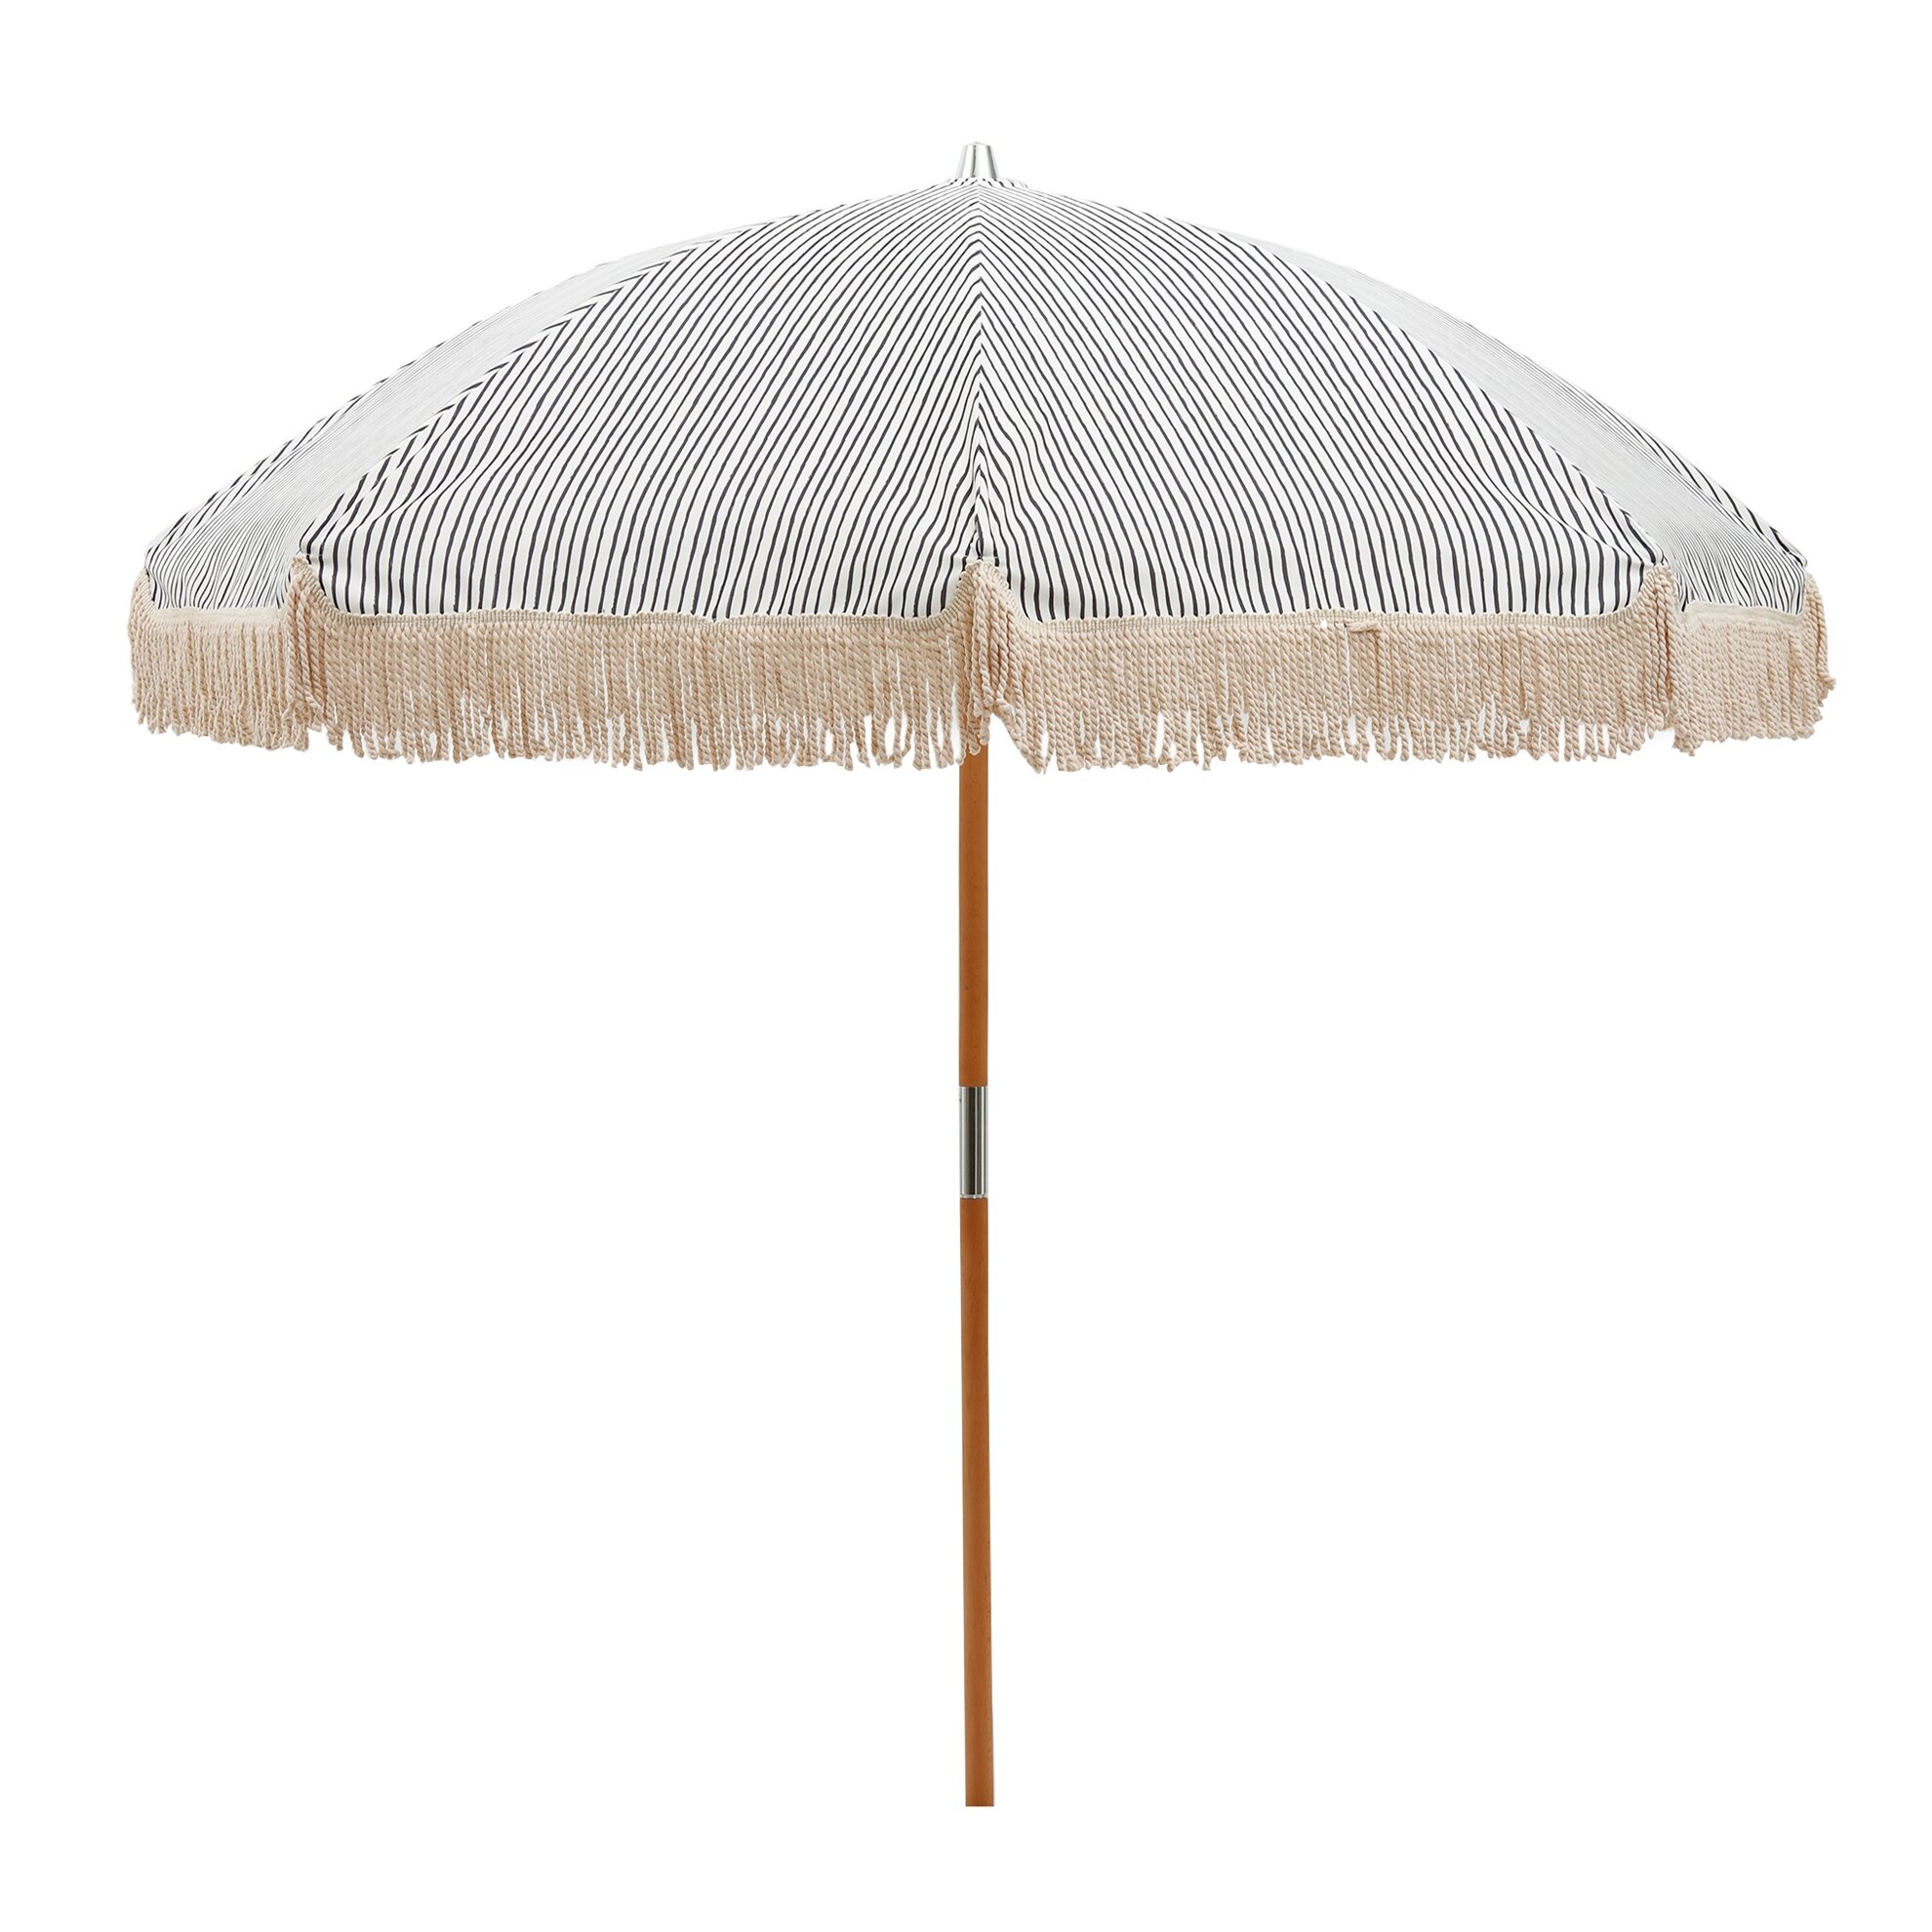 Bahçe Şemsiyesi (180x223cm)